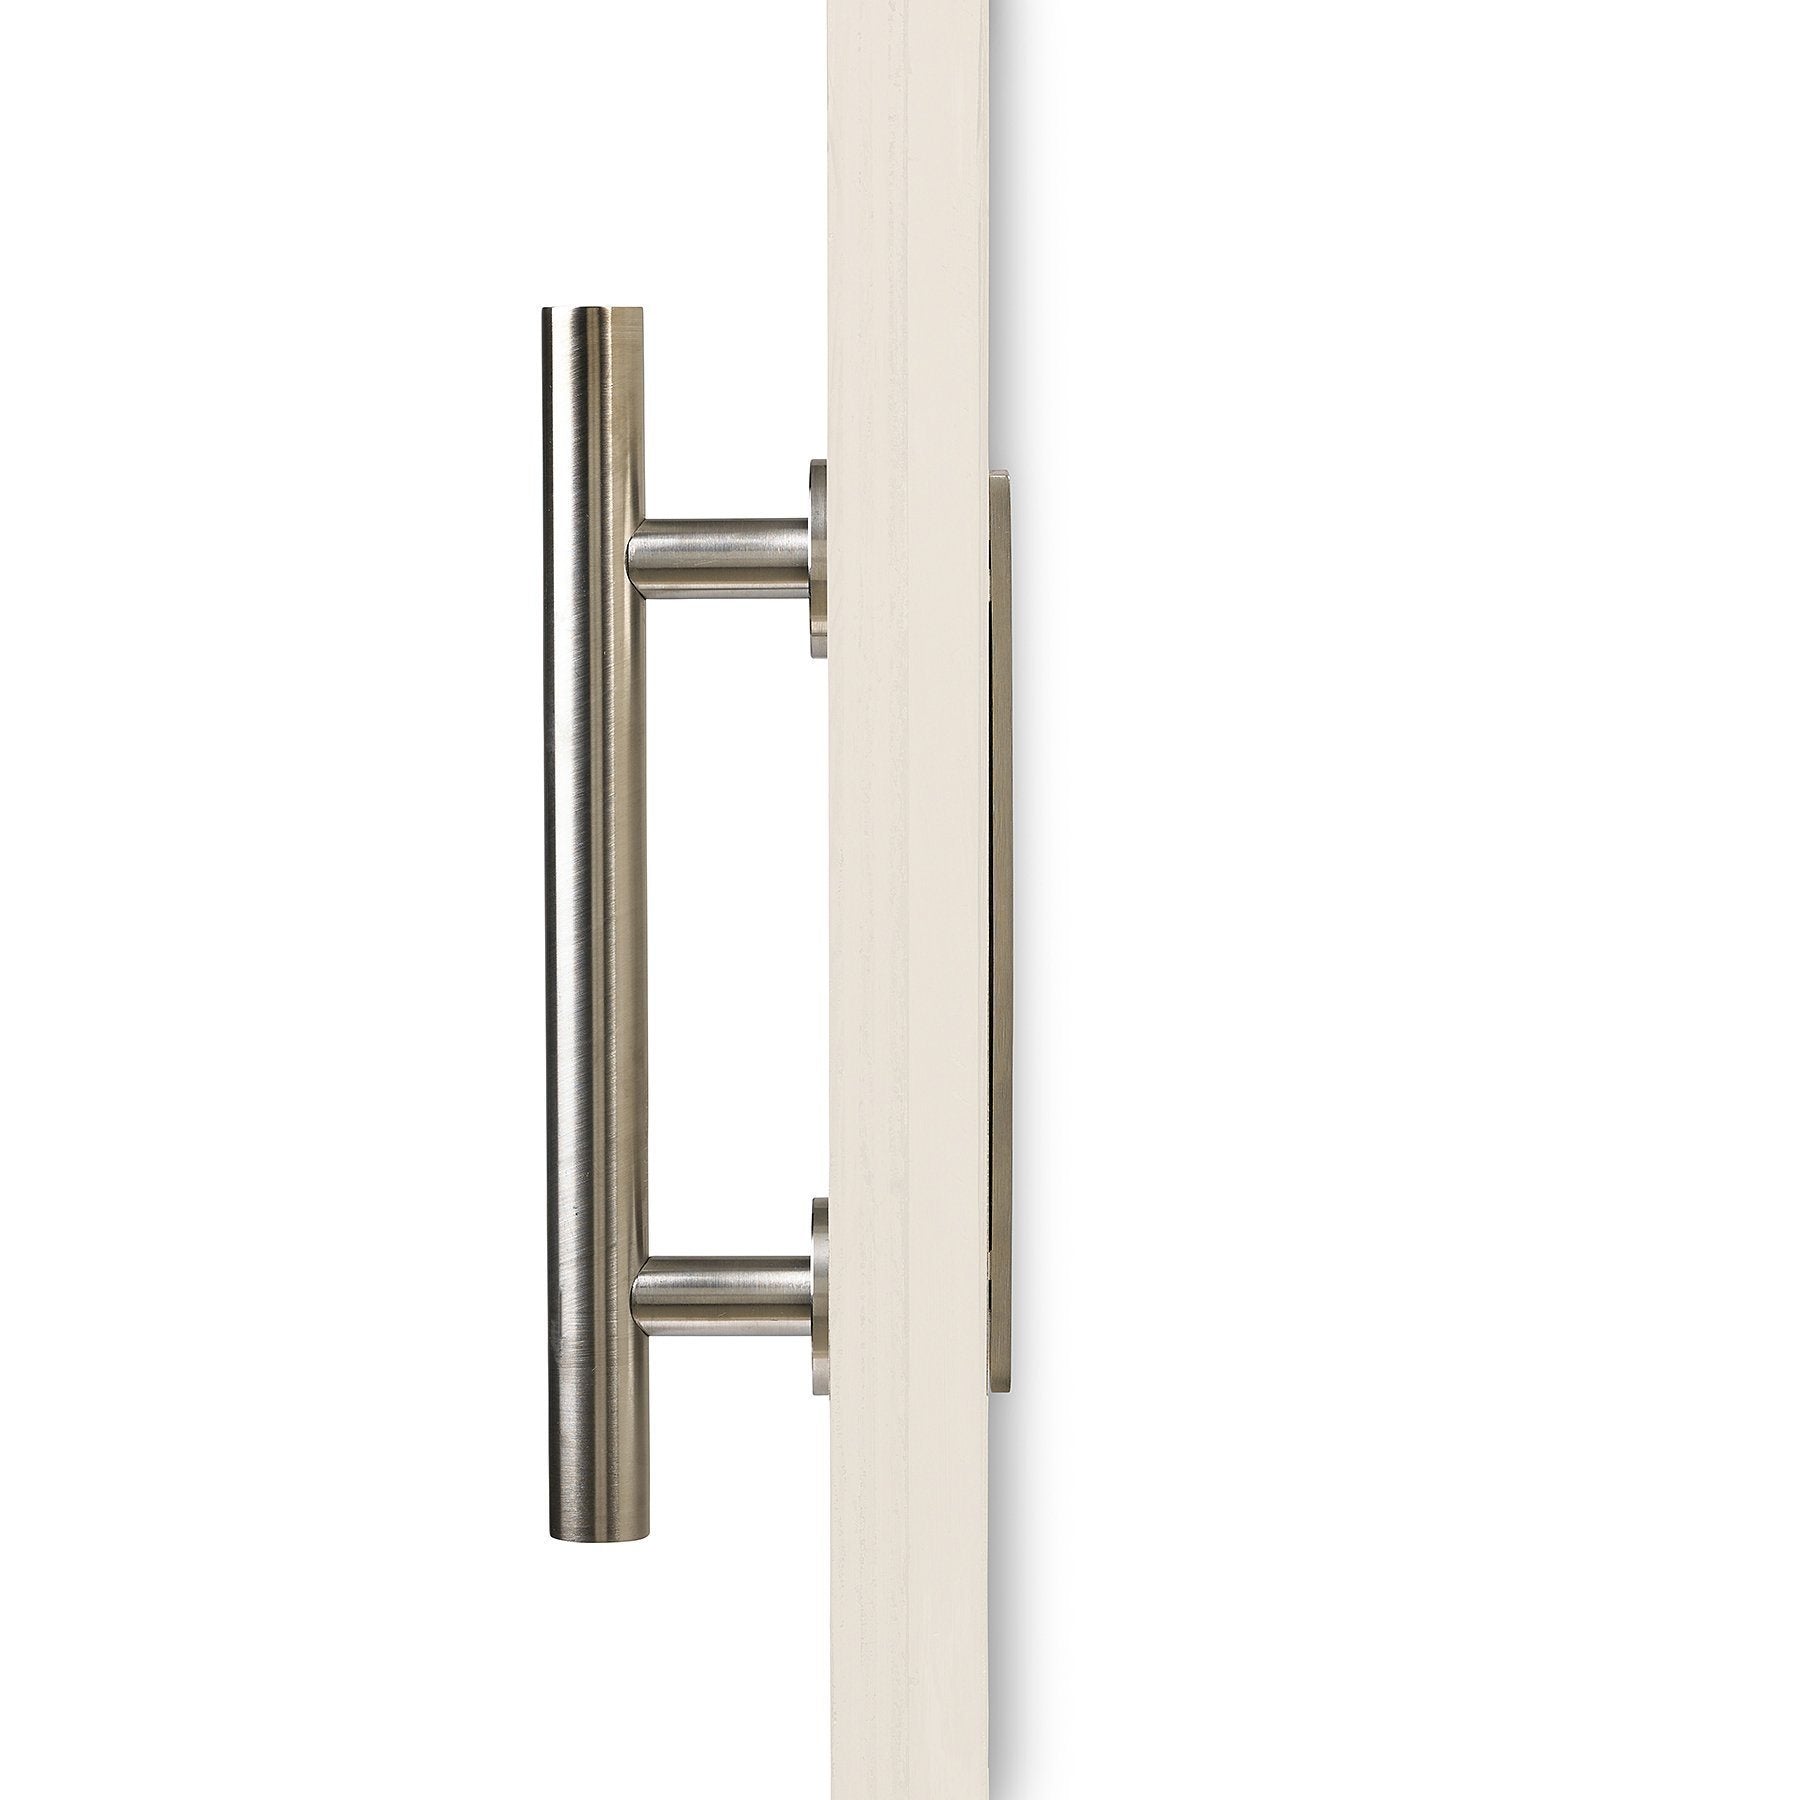 Sliding Door Handle, Stainless Steel Push Door Handles, Cabinet Handle Pull  With Back Plate For Garden Closet Barn Doors